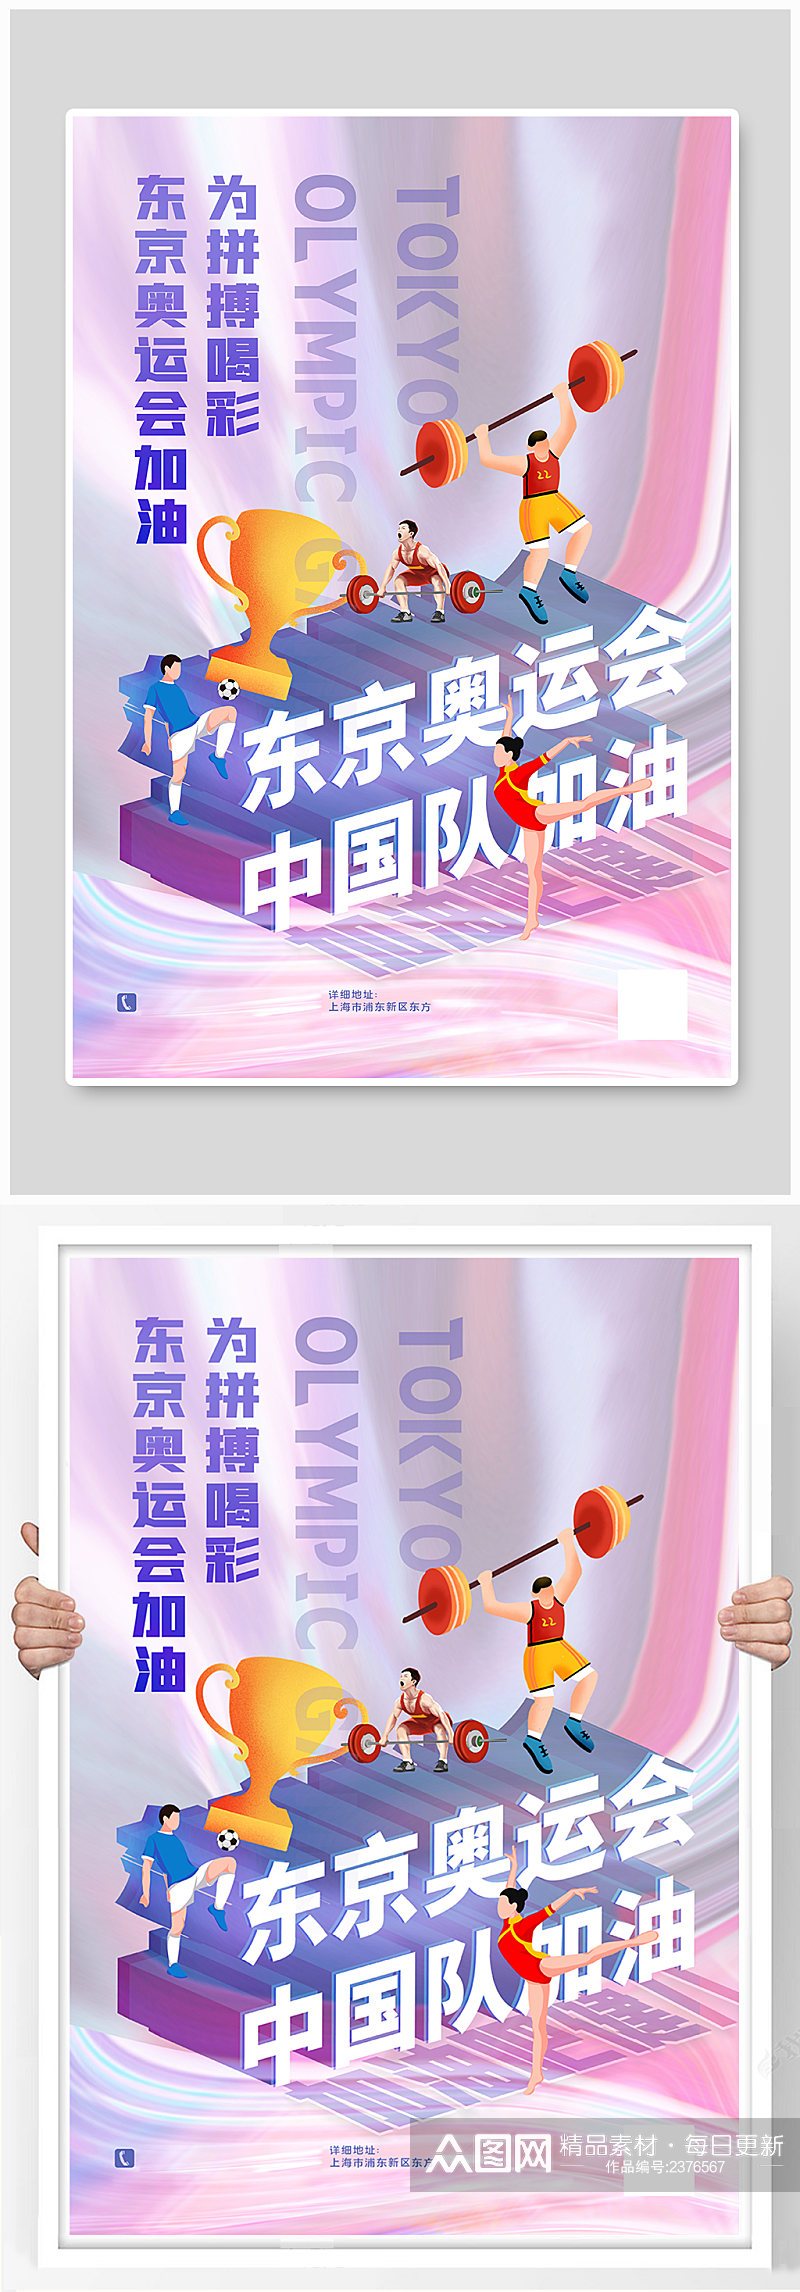 创意酸性金属风东京奥运会主题海报素材